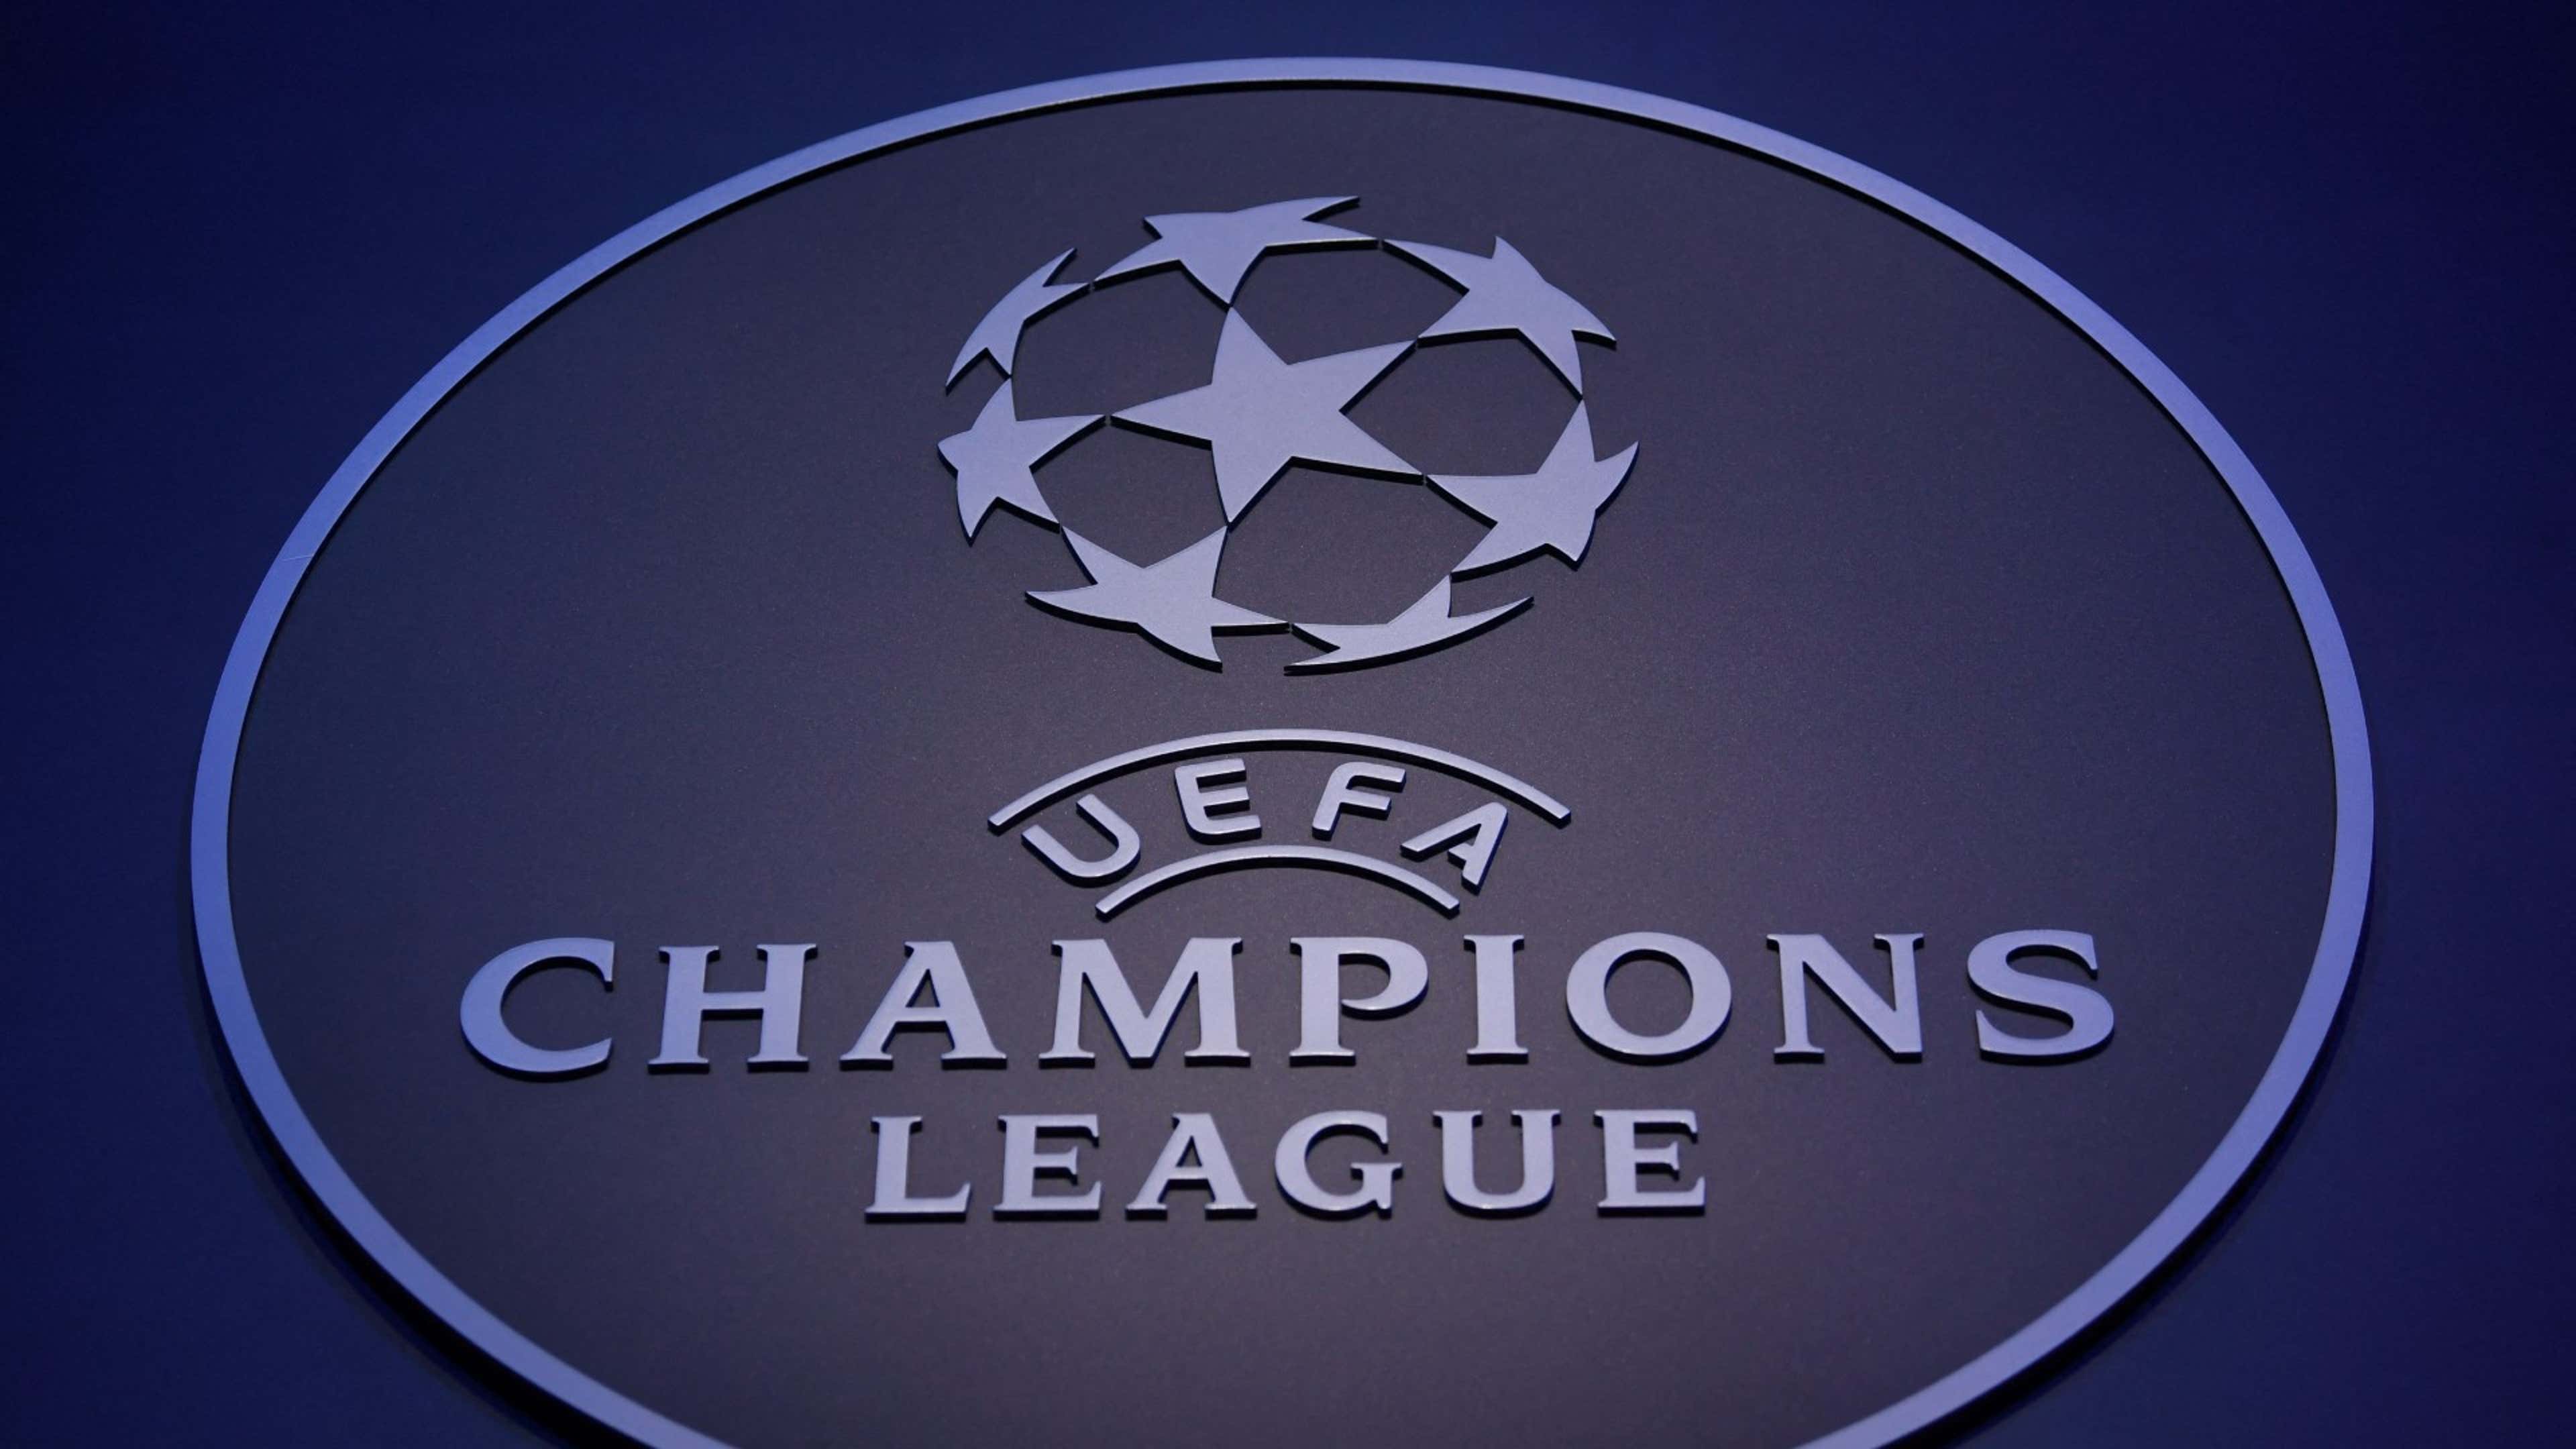 Confira a agenda de jogos da segunda rodada da Champions League com  transmissão da HBO Max, TNT e Space nesta semana